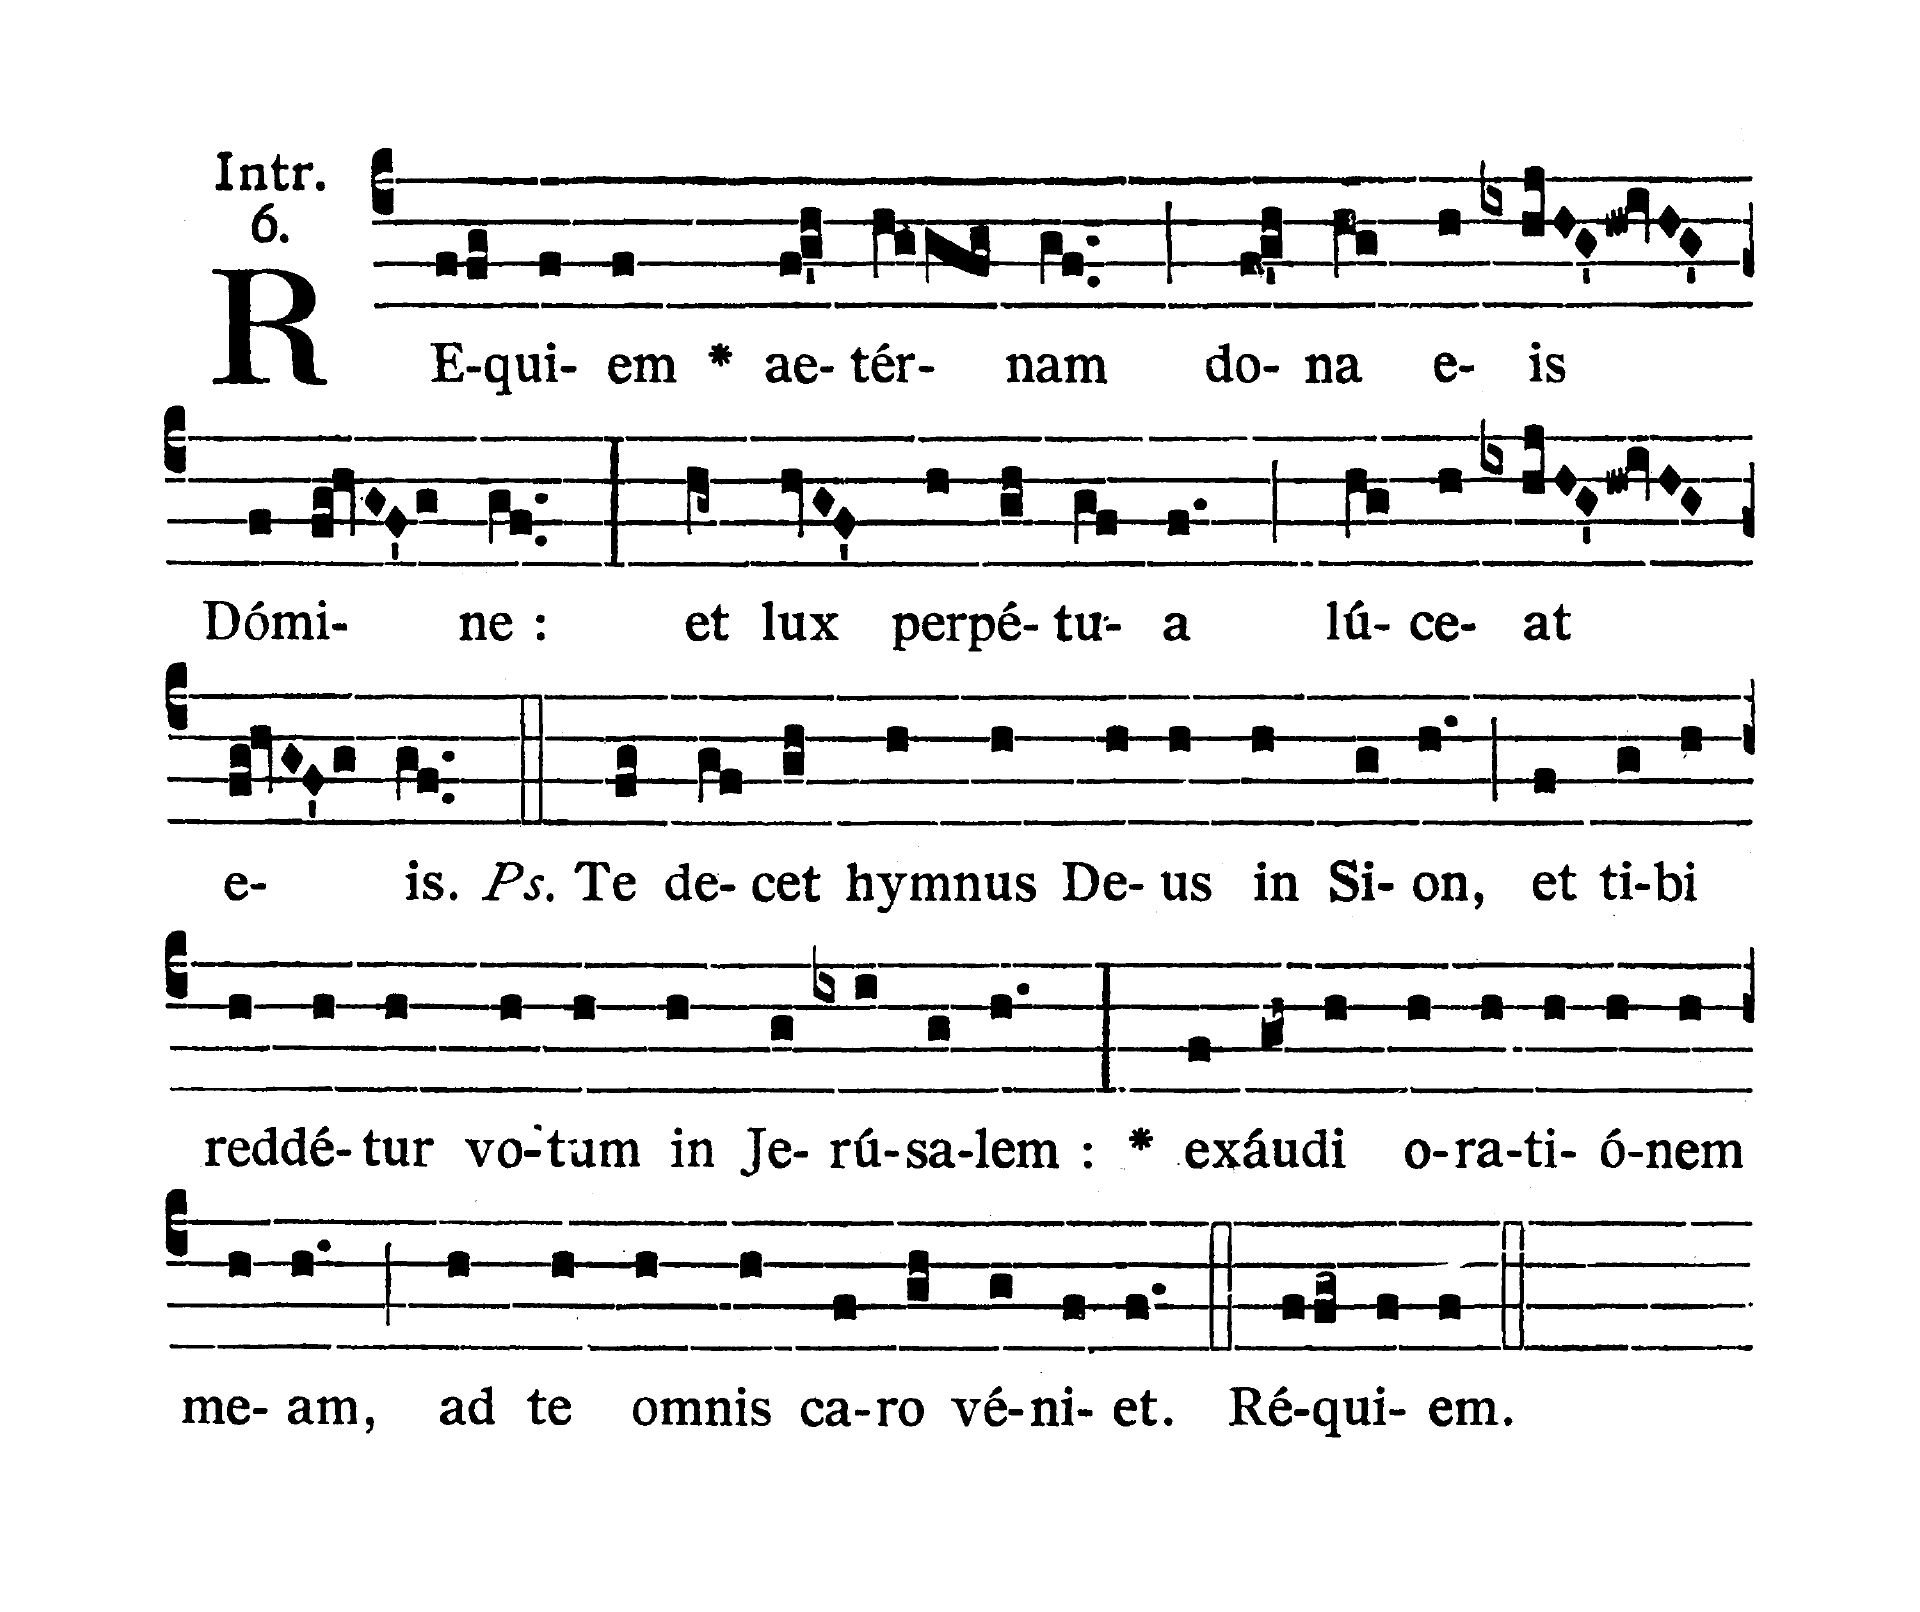 Missa pro defunctis - Introitus (Requiem aeternam)